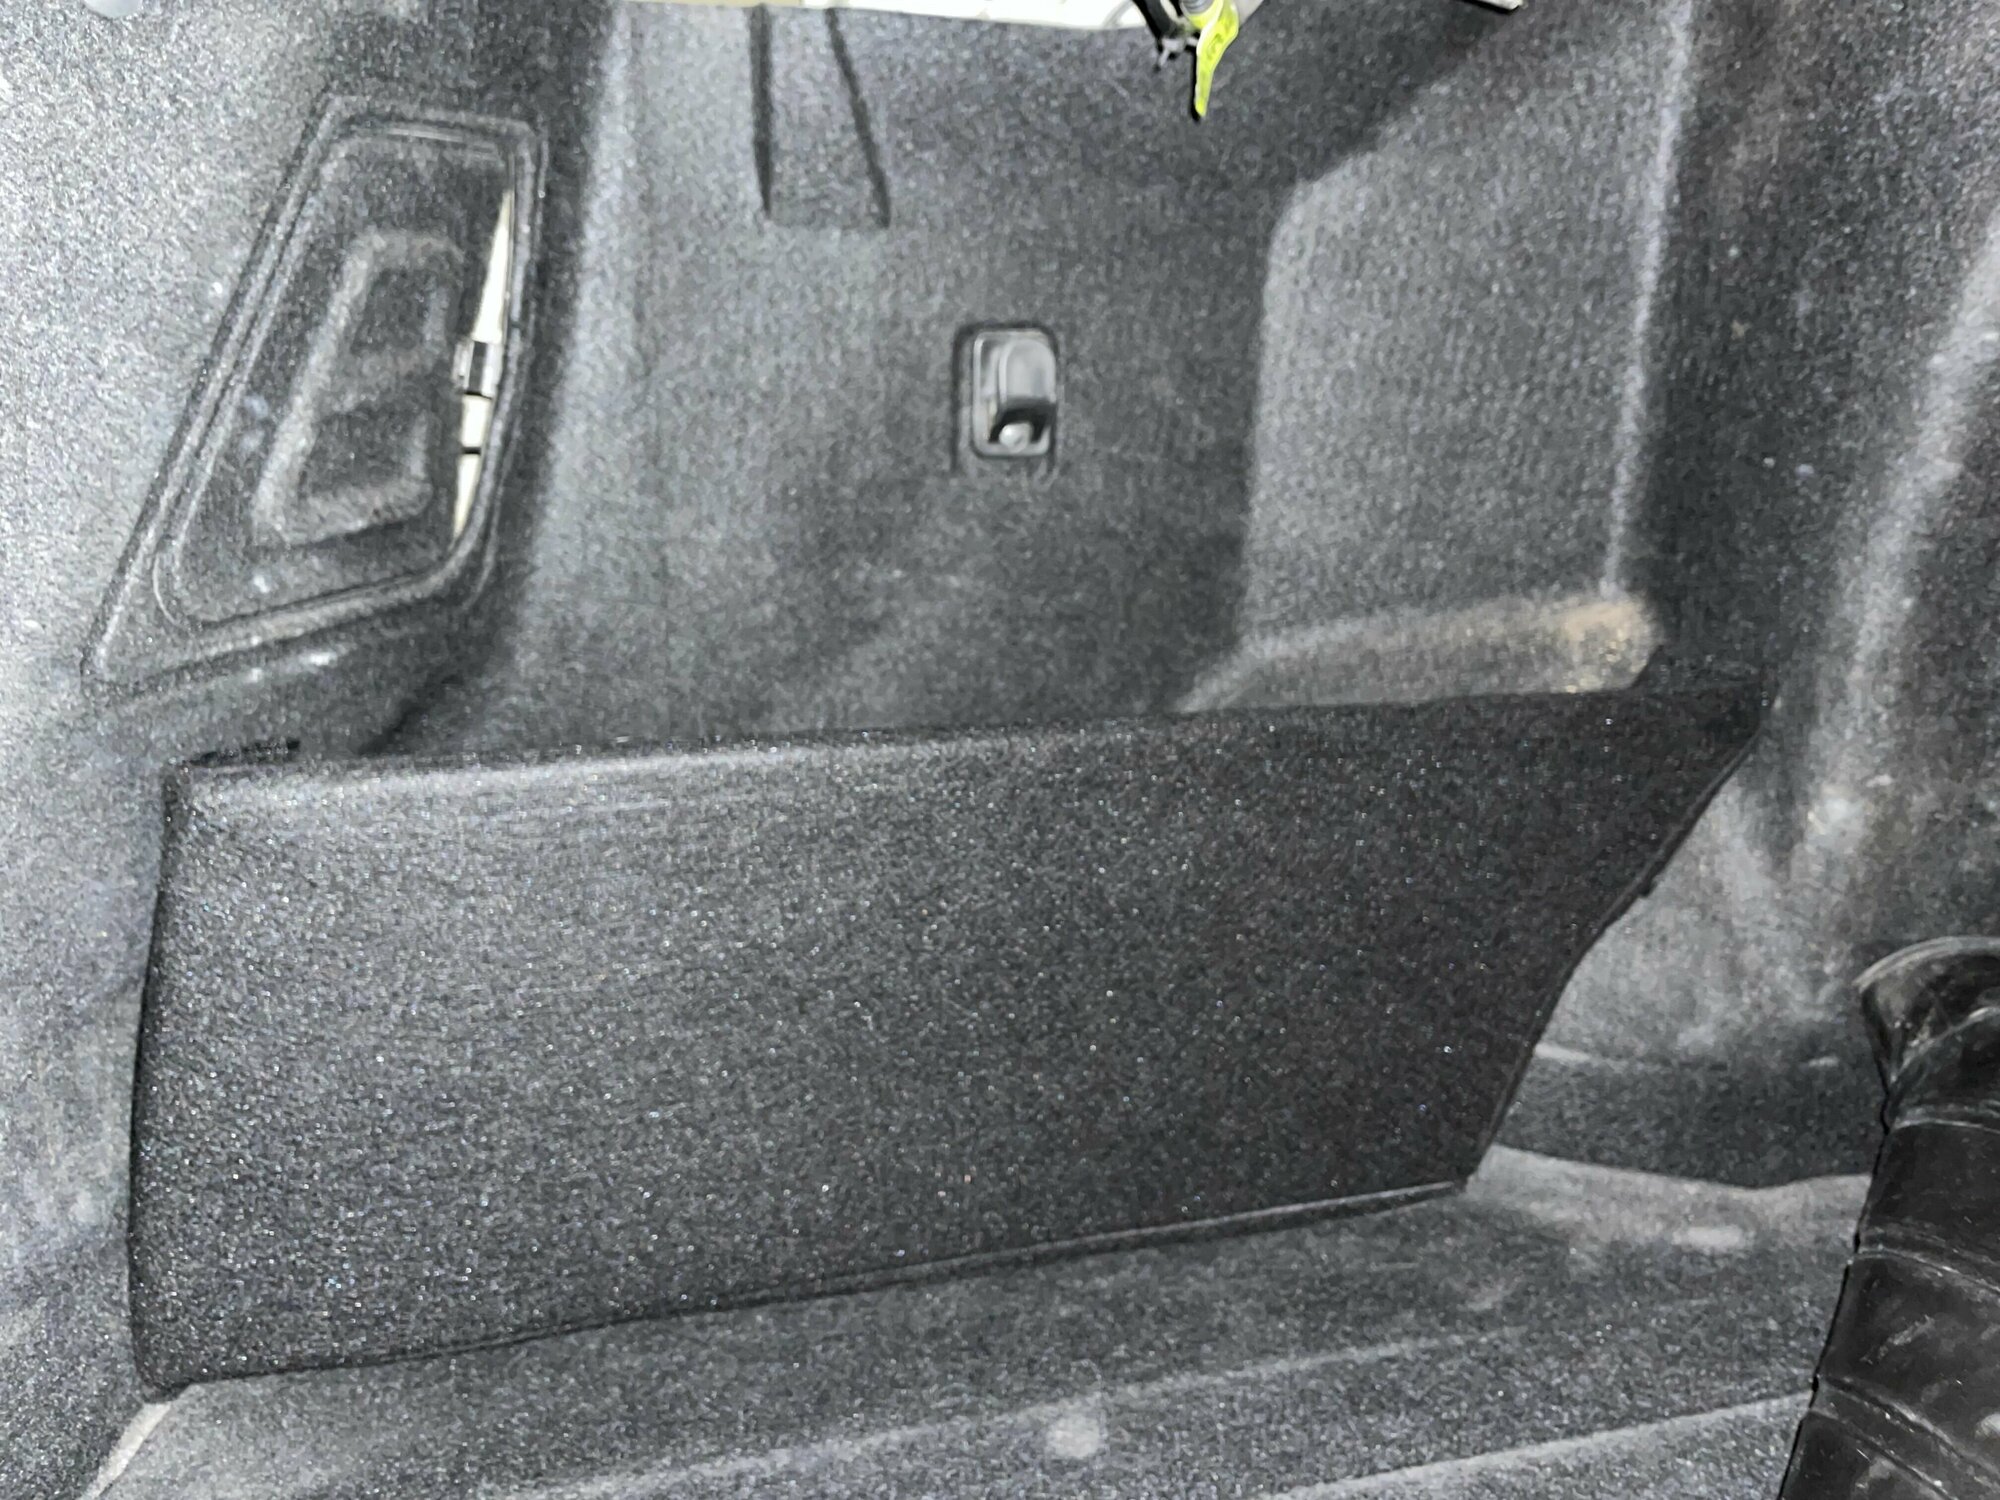 Органайзер в багажник для автомобиля Daewoo Gentra. Багажные карманы для Дэу Джентра. Одна панель только в левую нишу